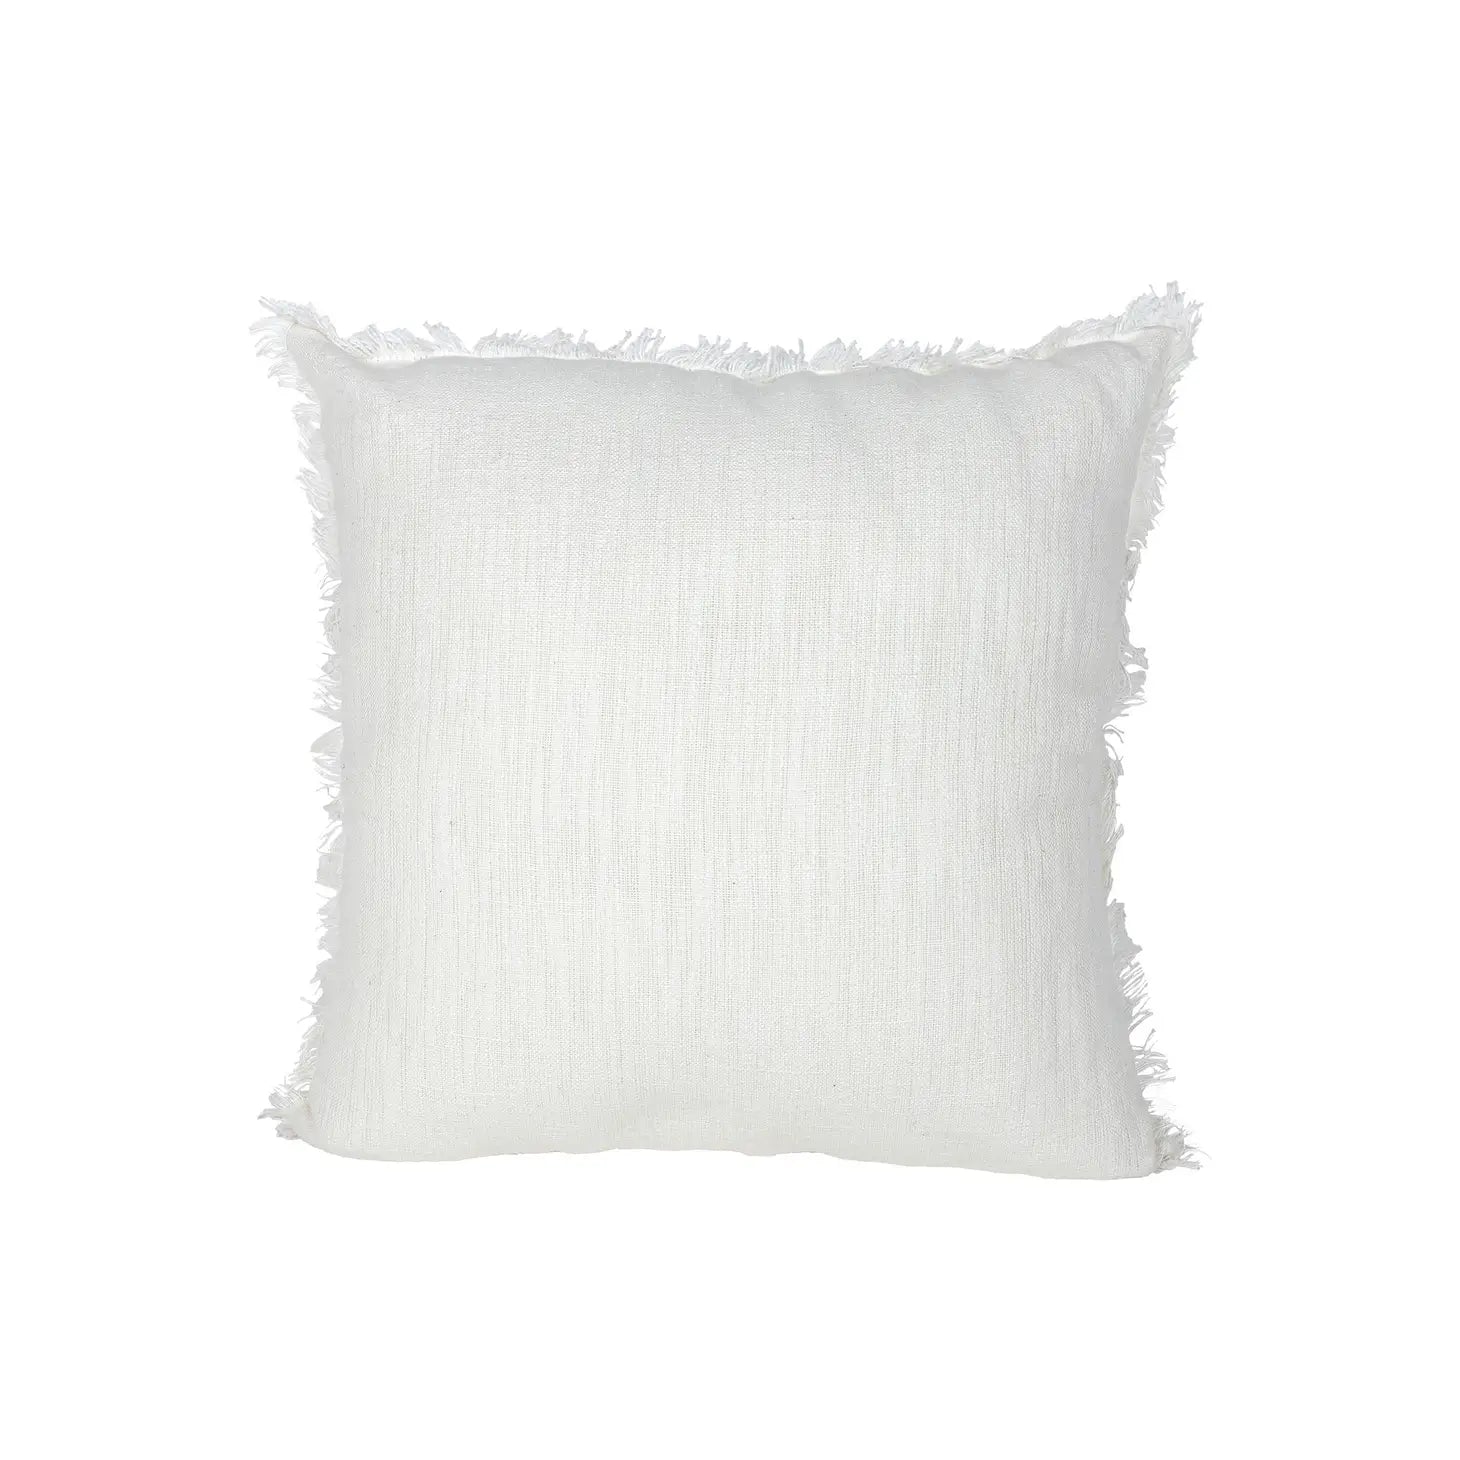 Woven Linen Pillow